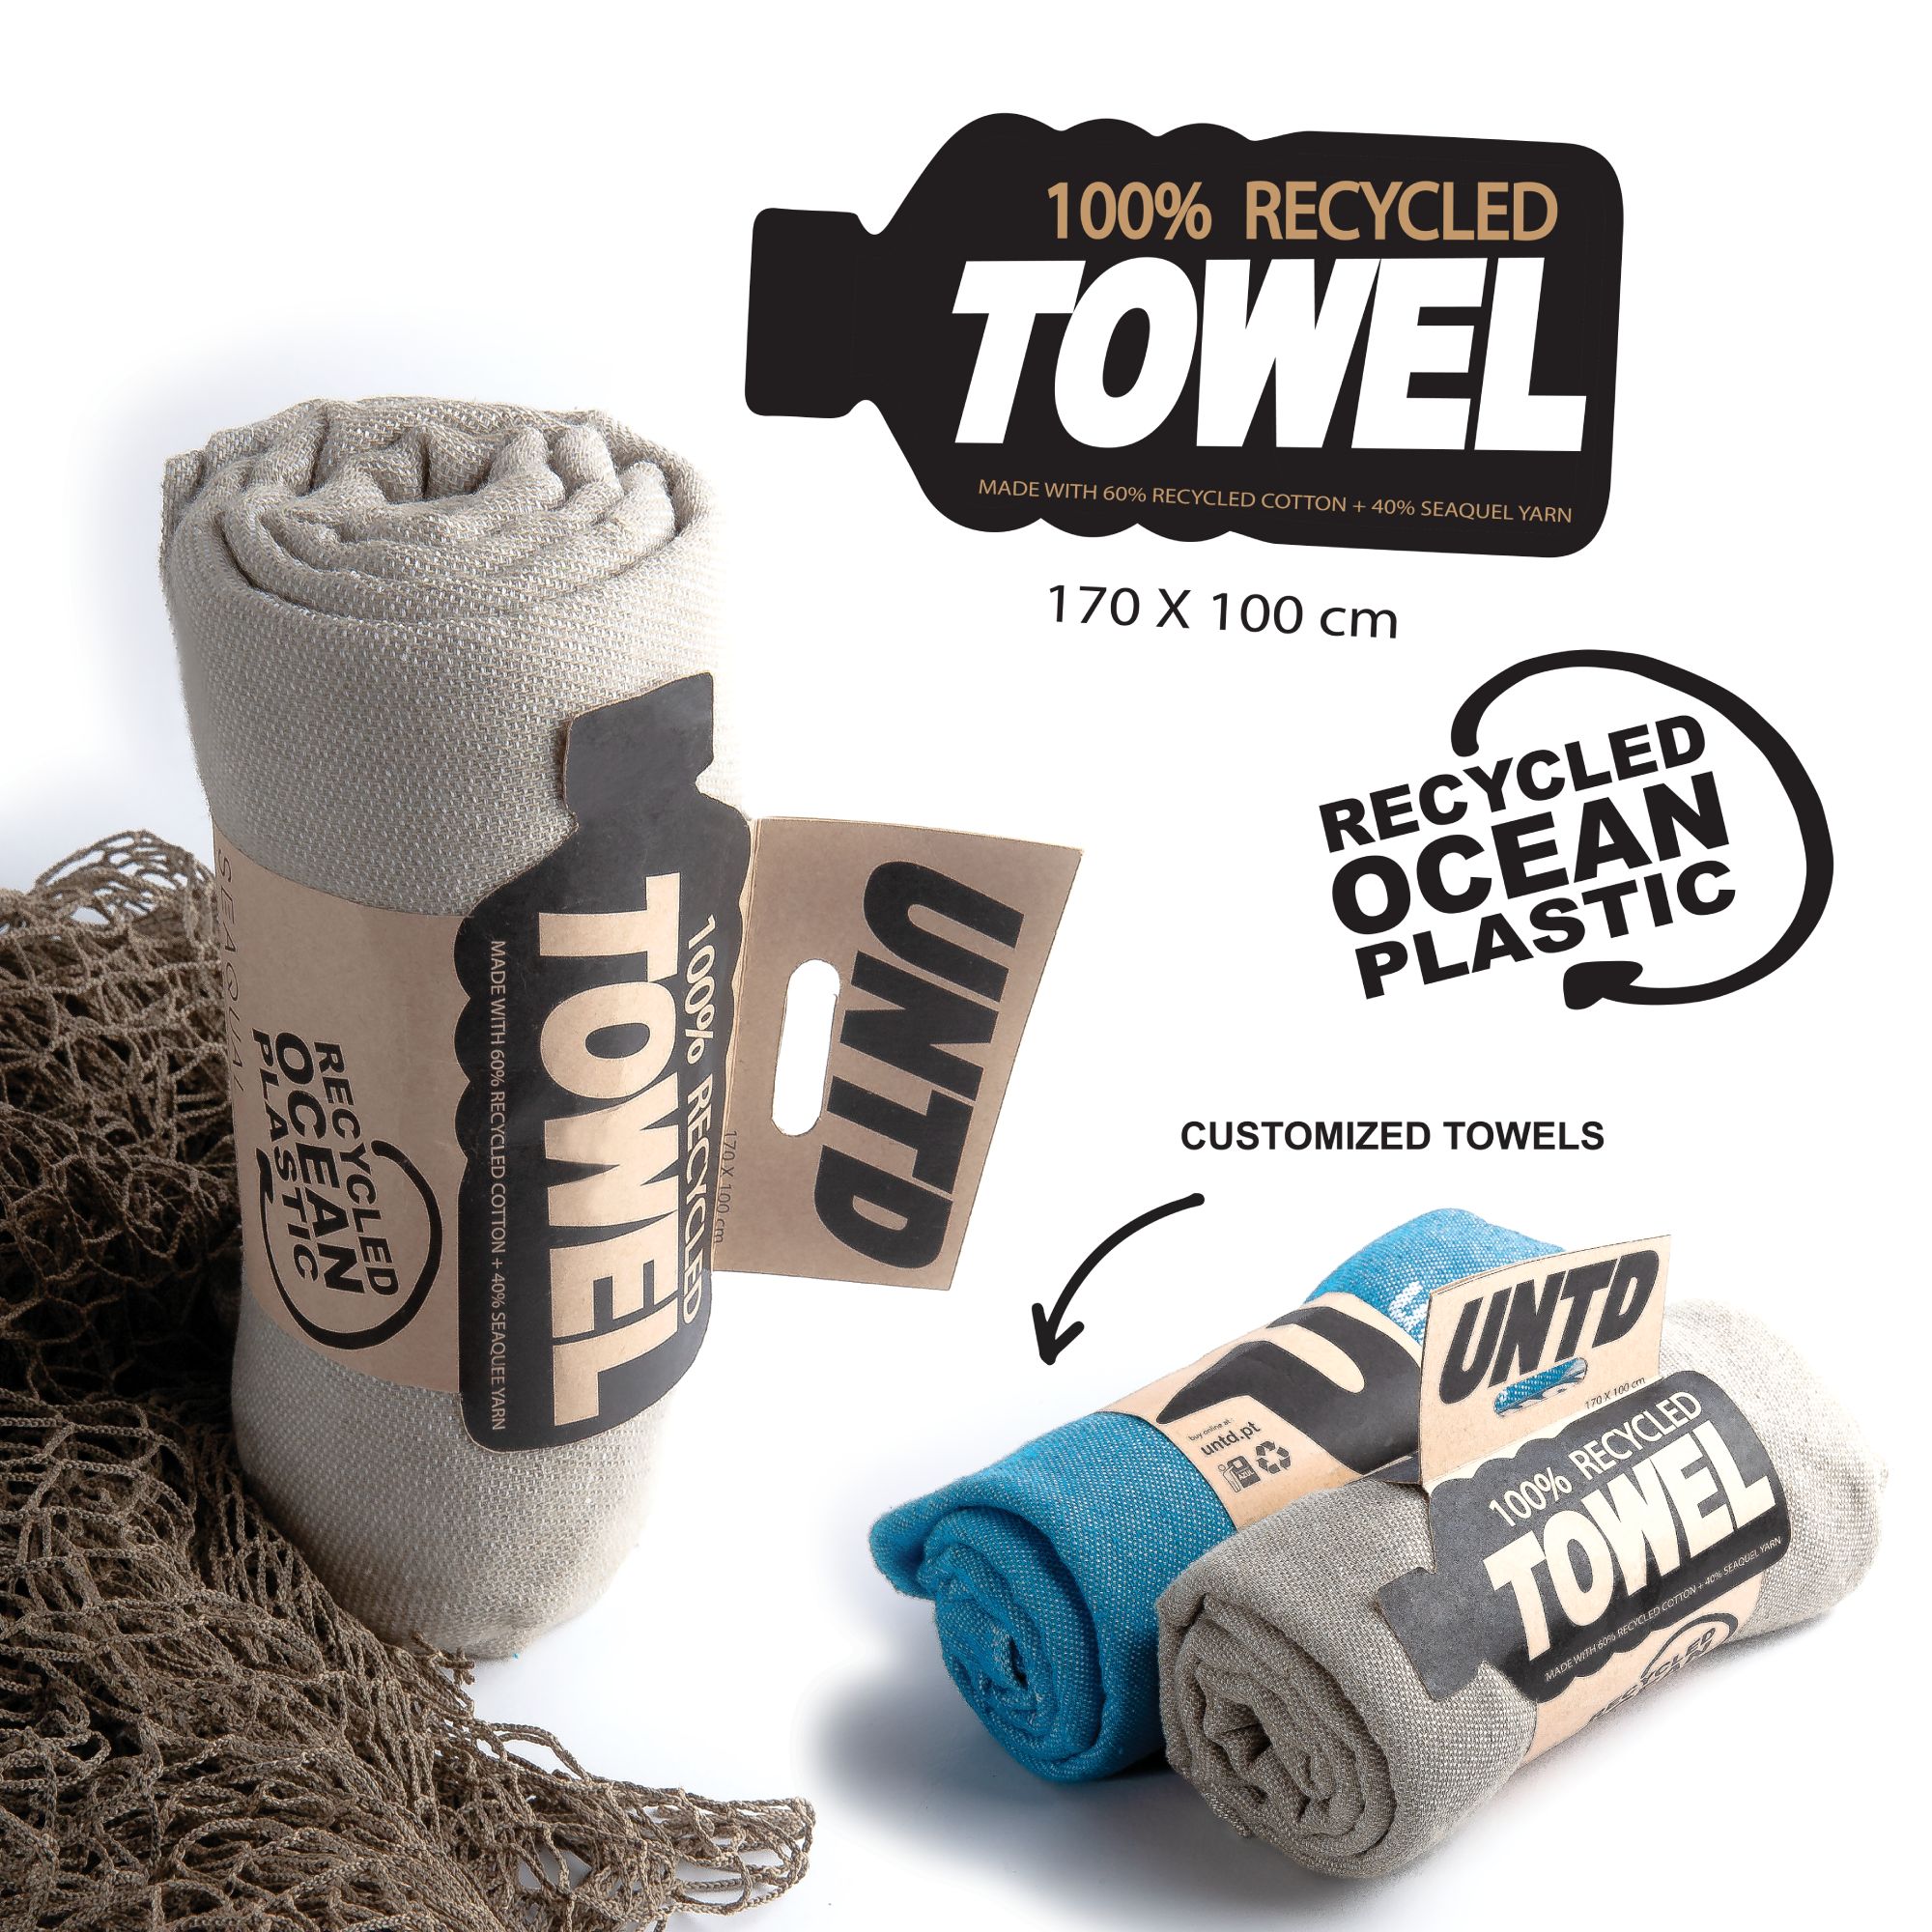 towel_100_reciclada_0360f3.jpg